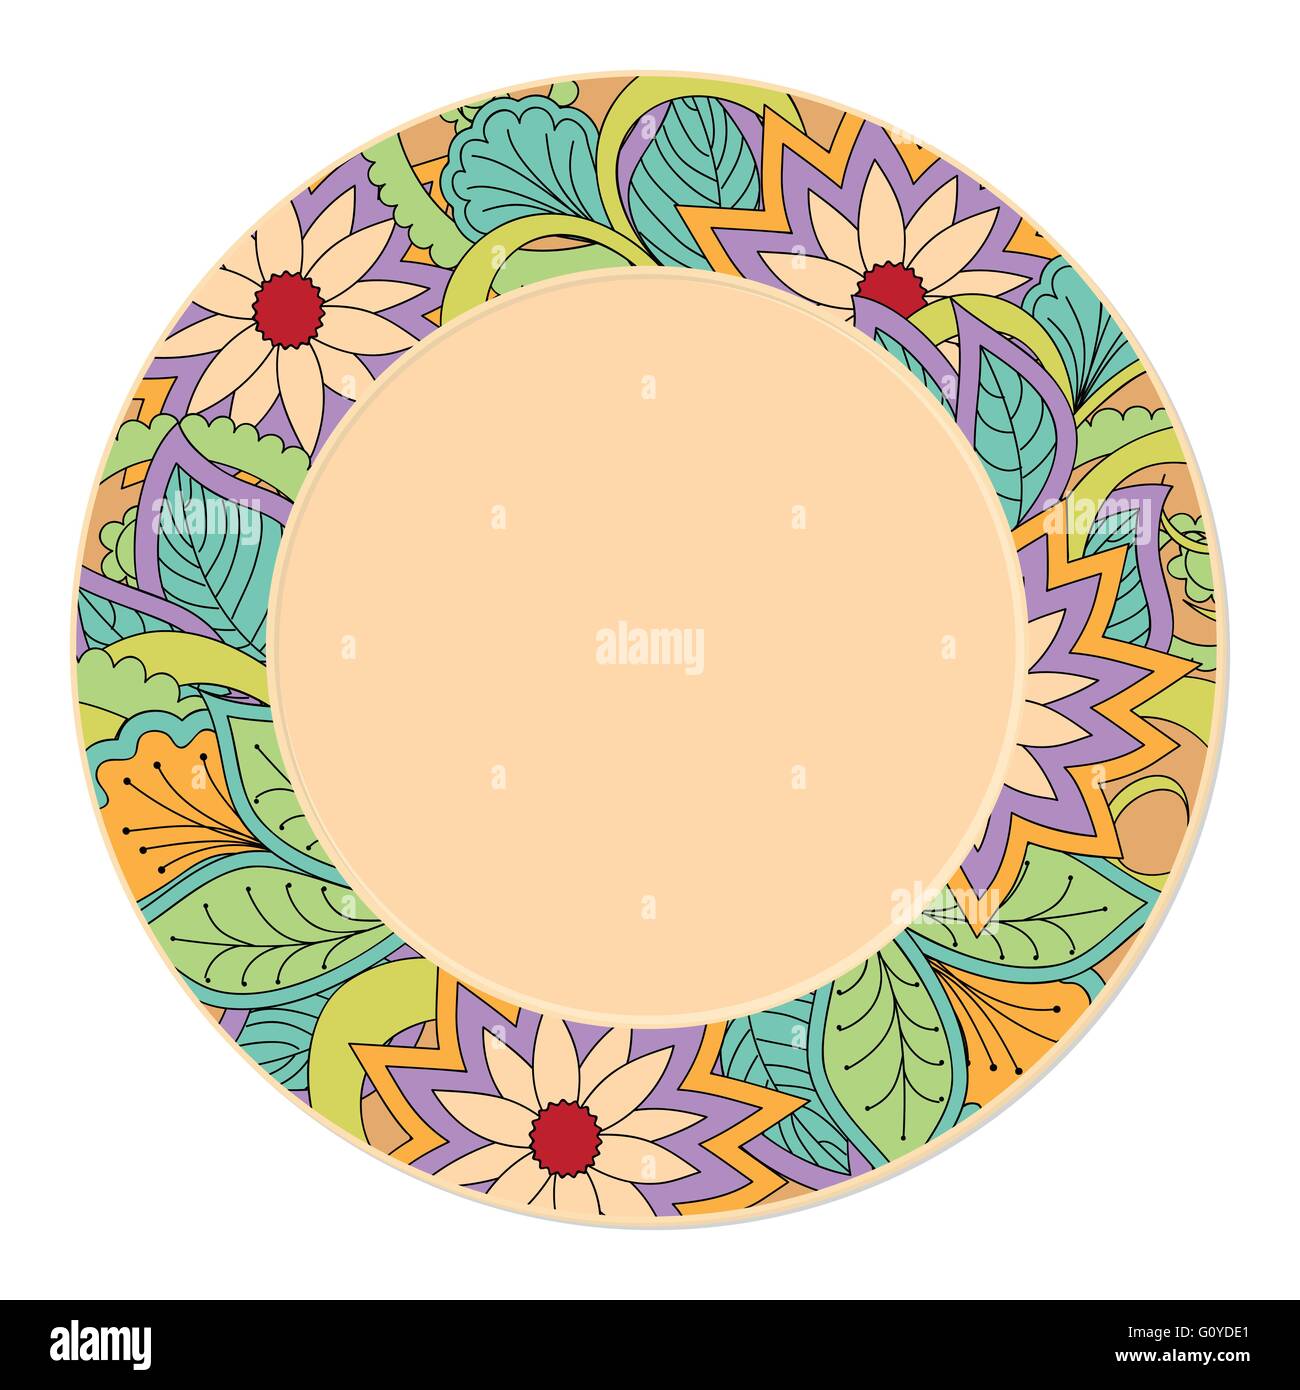 Disegnata a mano colorato decorato piattino in stile Boho con doodle fiori. isolato sul bianco. template per la decorazione dei piatti. Illustrazione Vettoriale